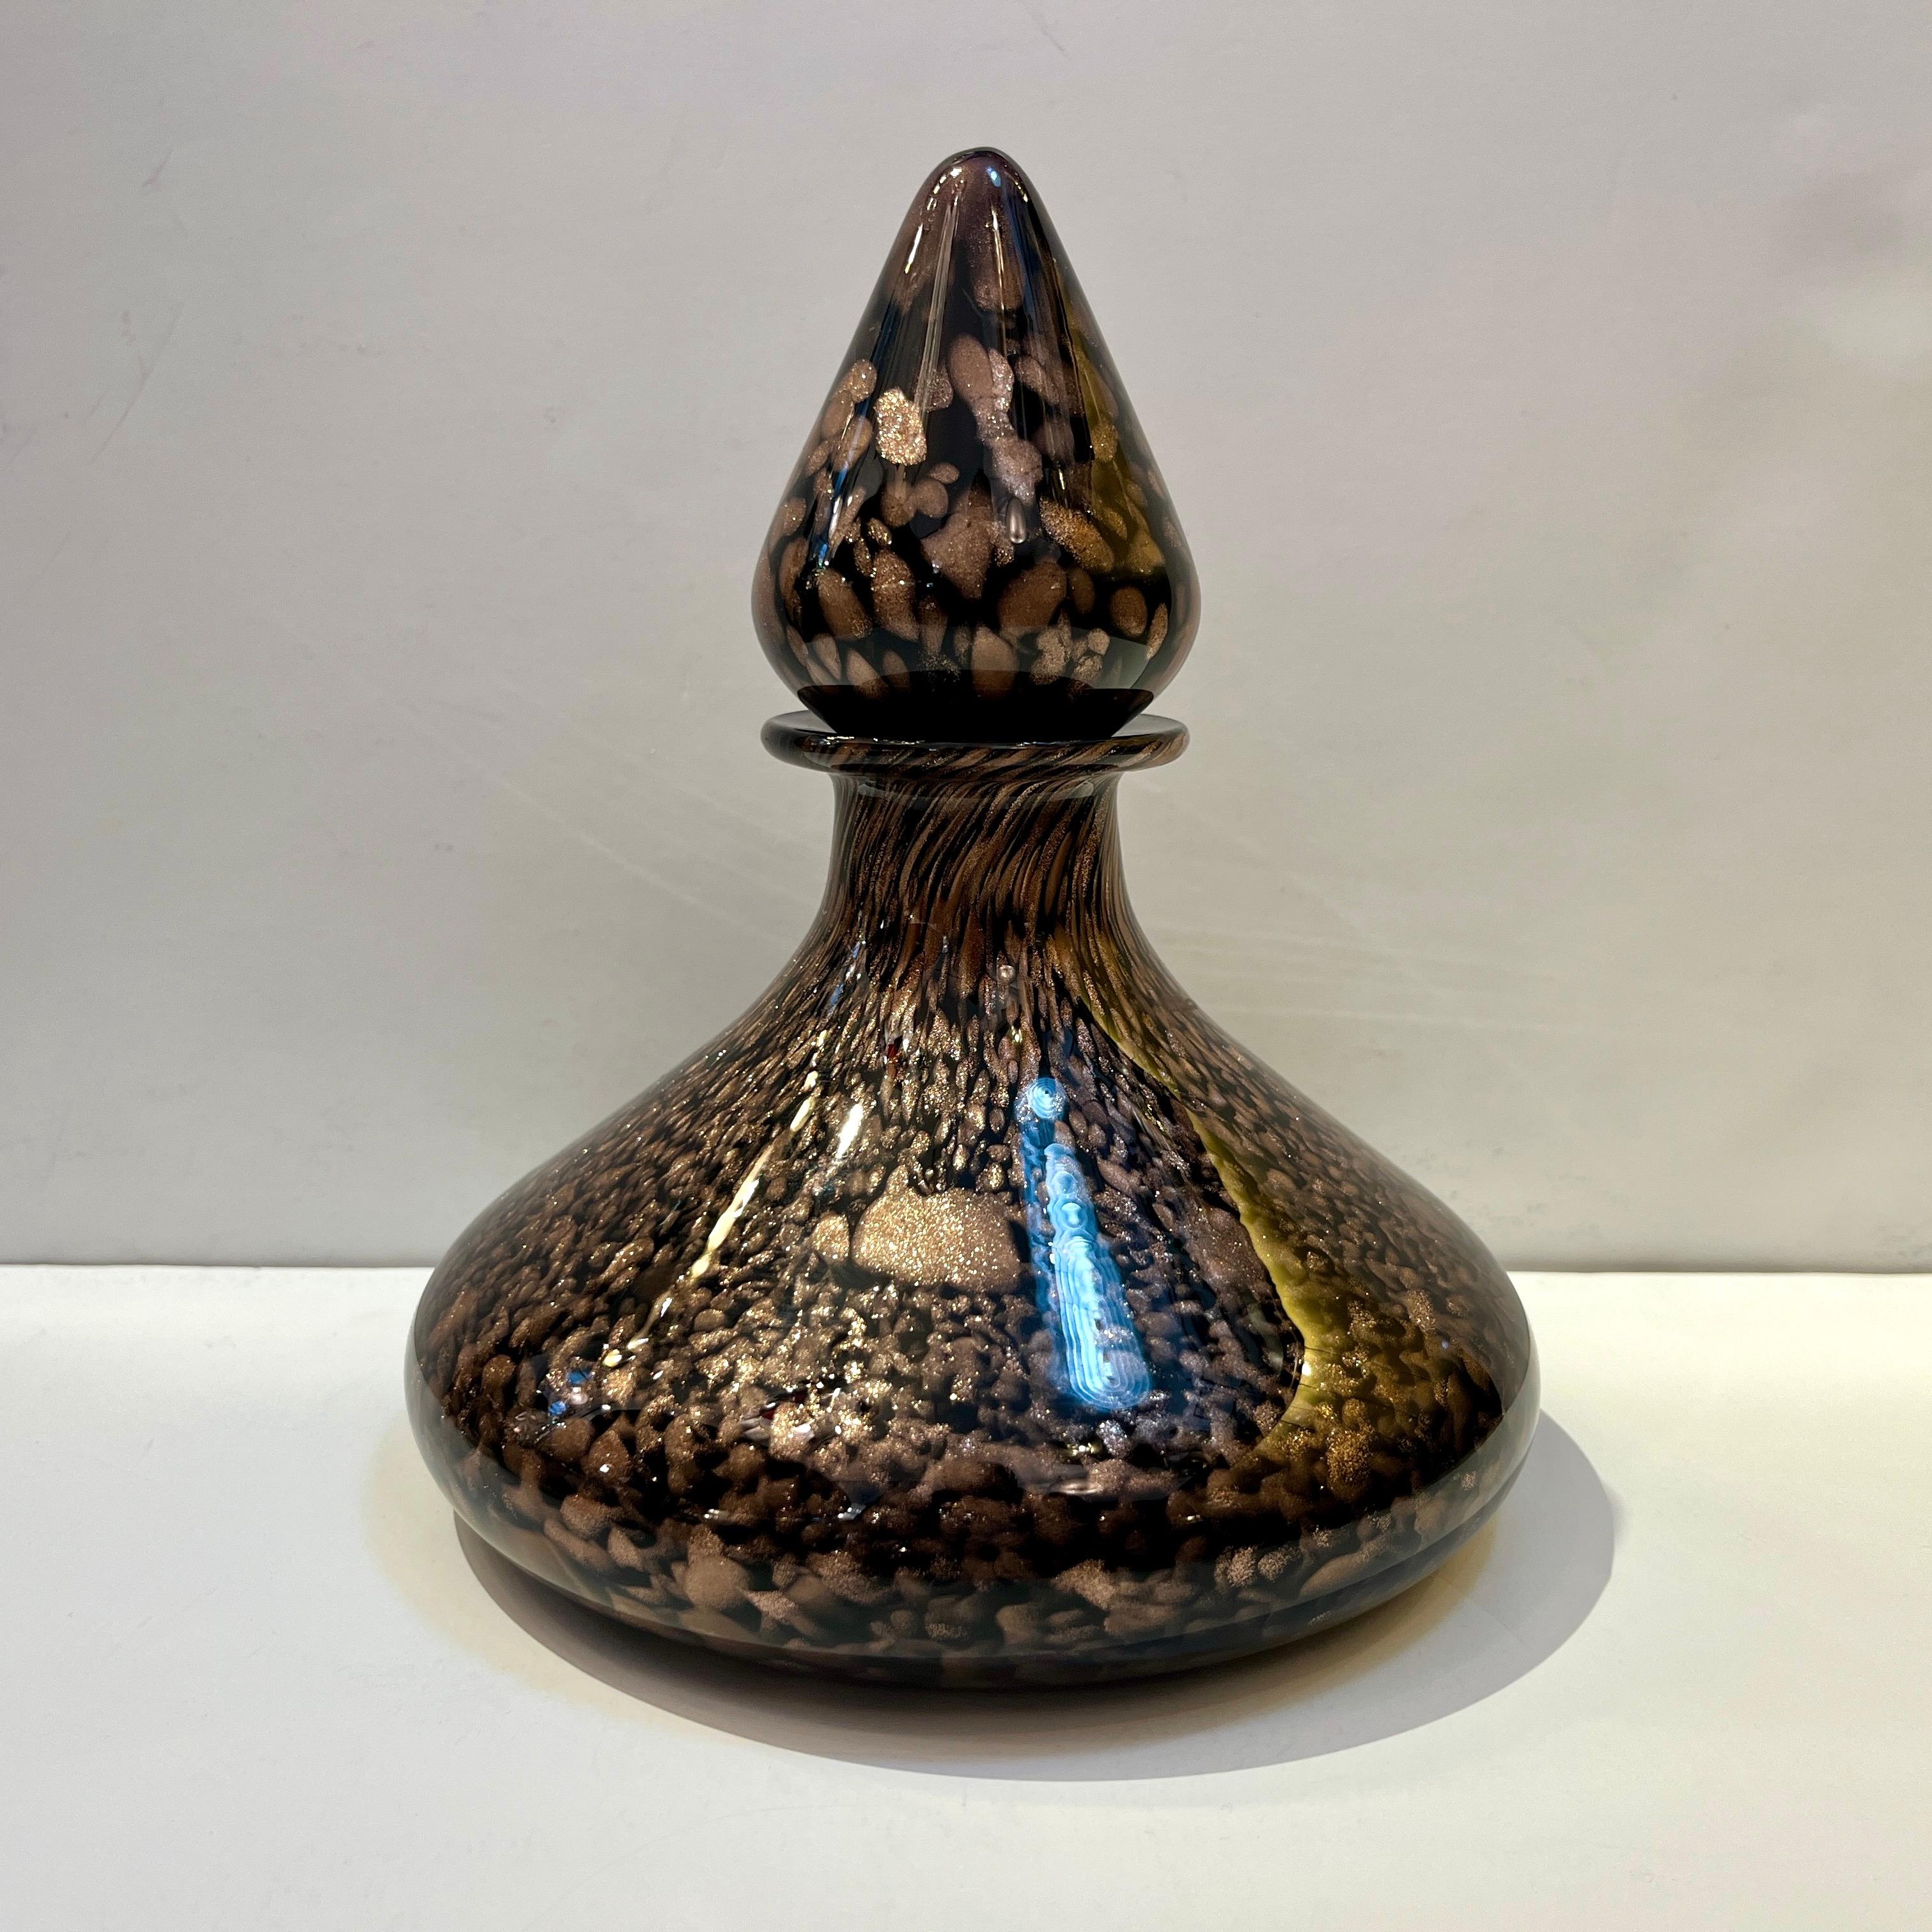 Das ist ein kleines Juwel! Dieses große dekorative Kunstwerk aus mundgeblasenem Murano-Glas wurde mit einer hochwertigen Technik realisiert: Der schwarze, runde, kugelförmige Flaschenkörper und der Verschluss sind großflächig mit kristallklarem Glas